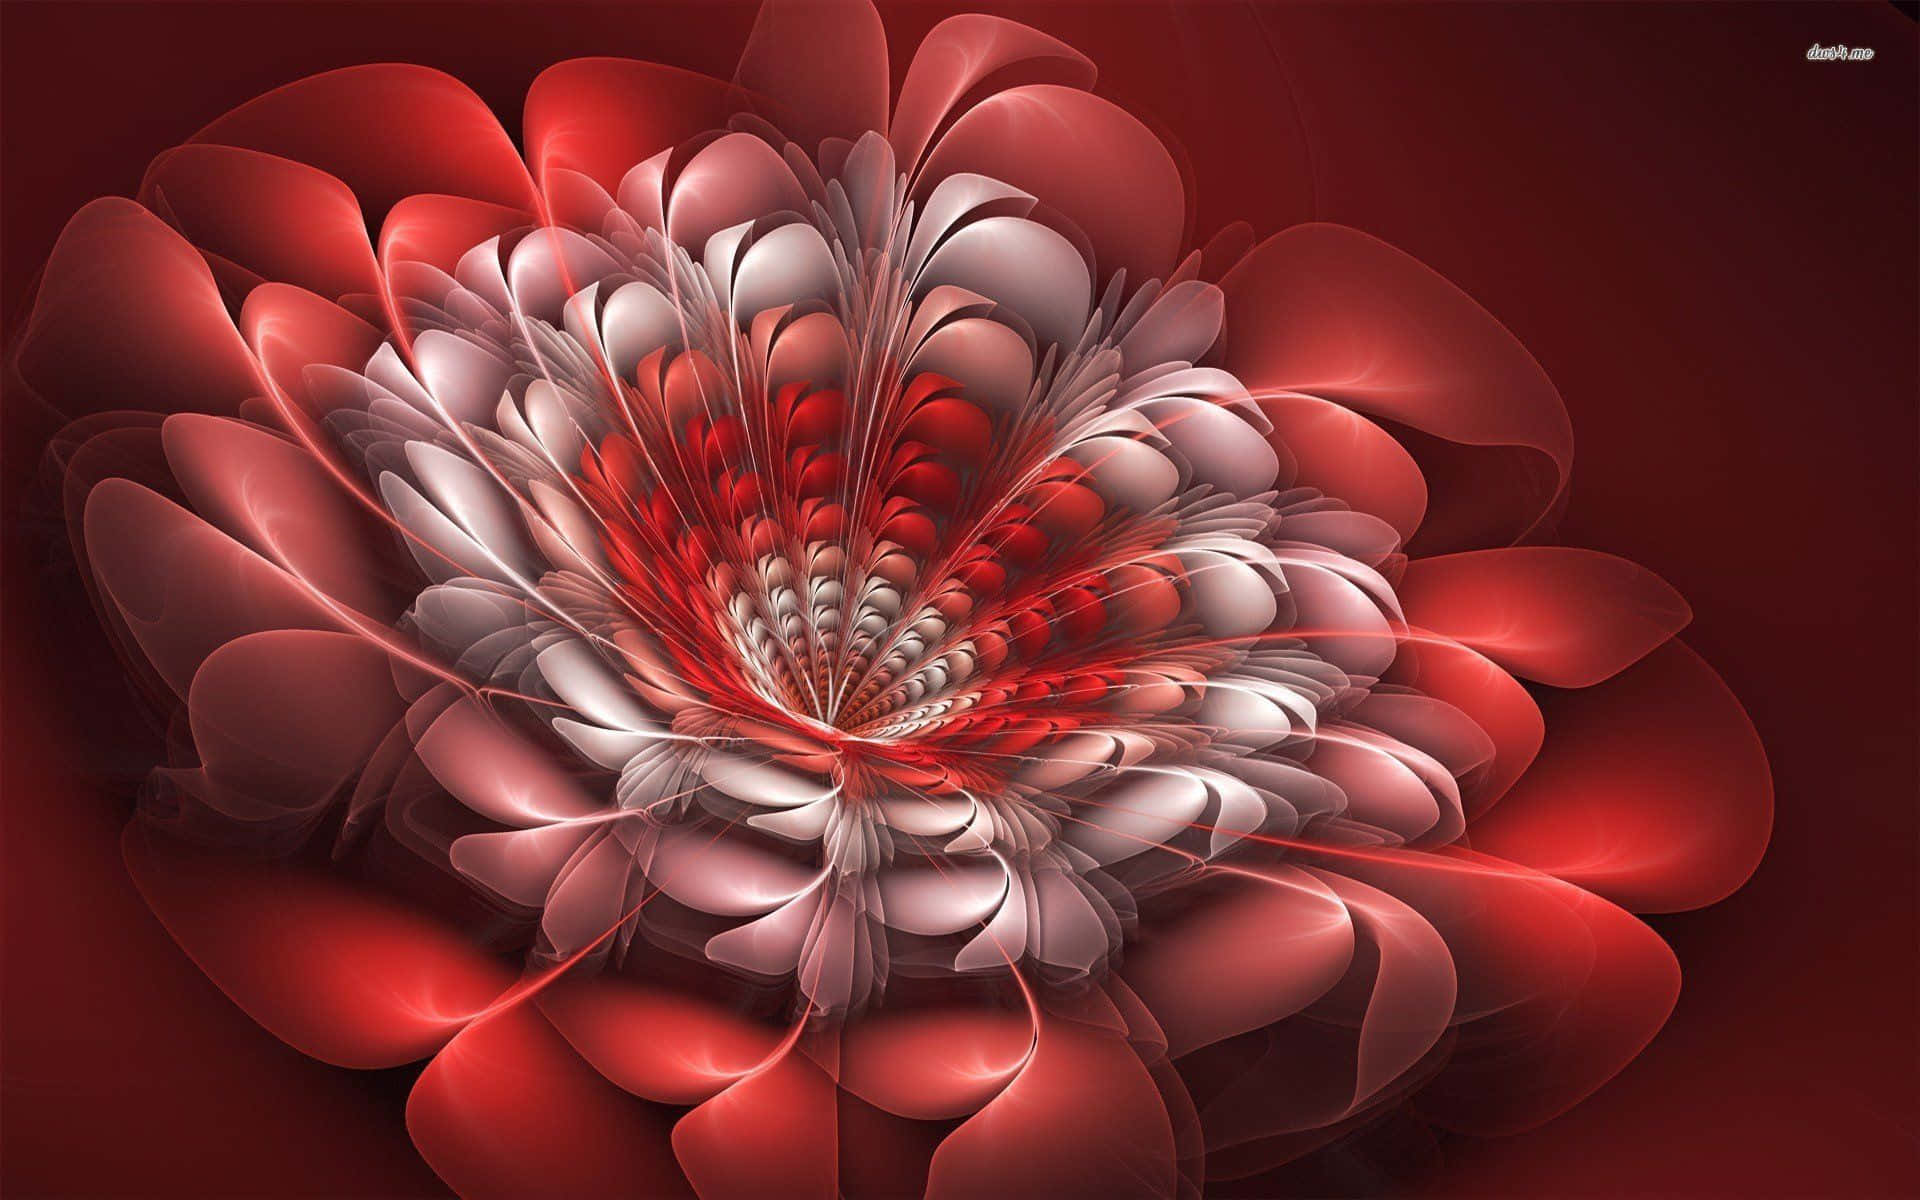 Stunning 3D Flower in Full Bloom against Celestial Background Wallpaper